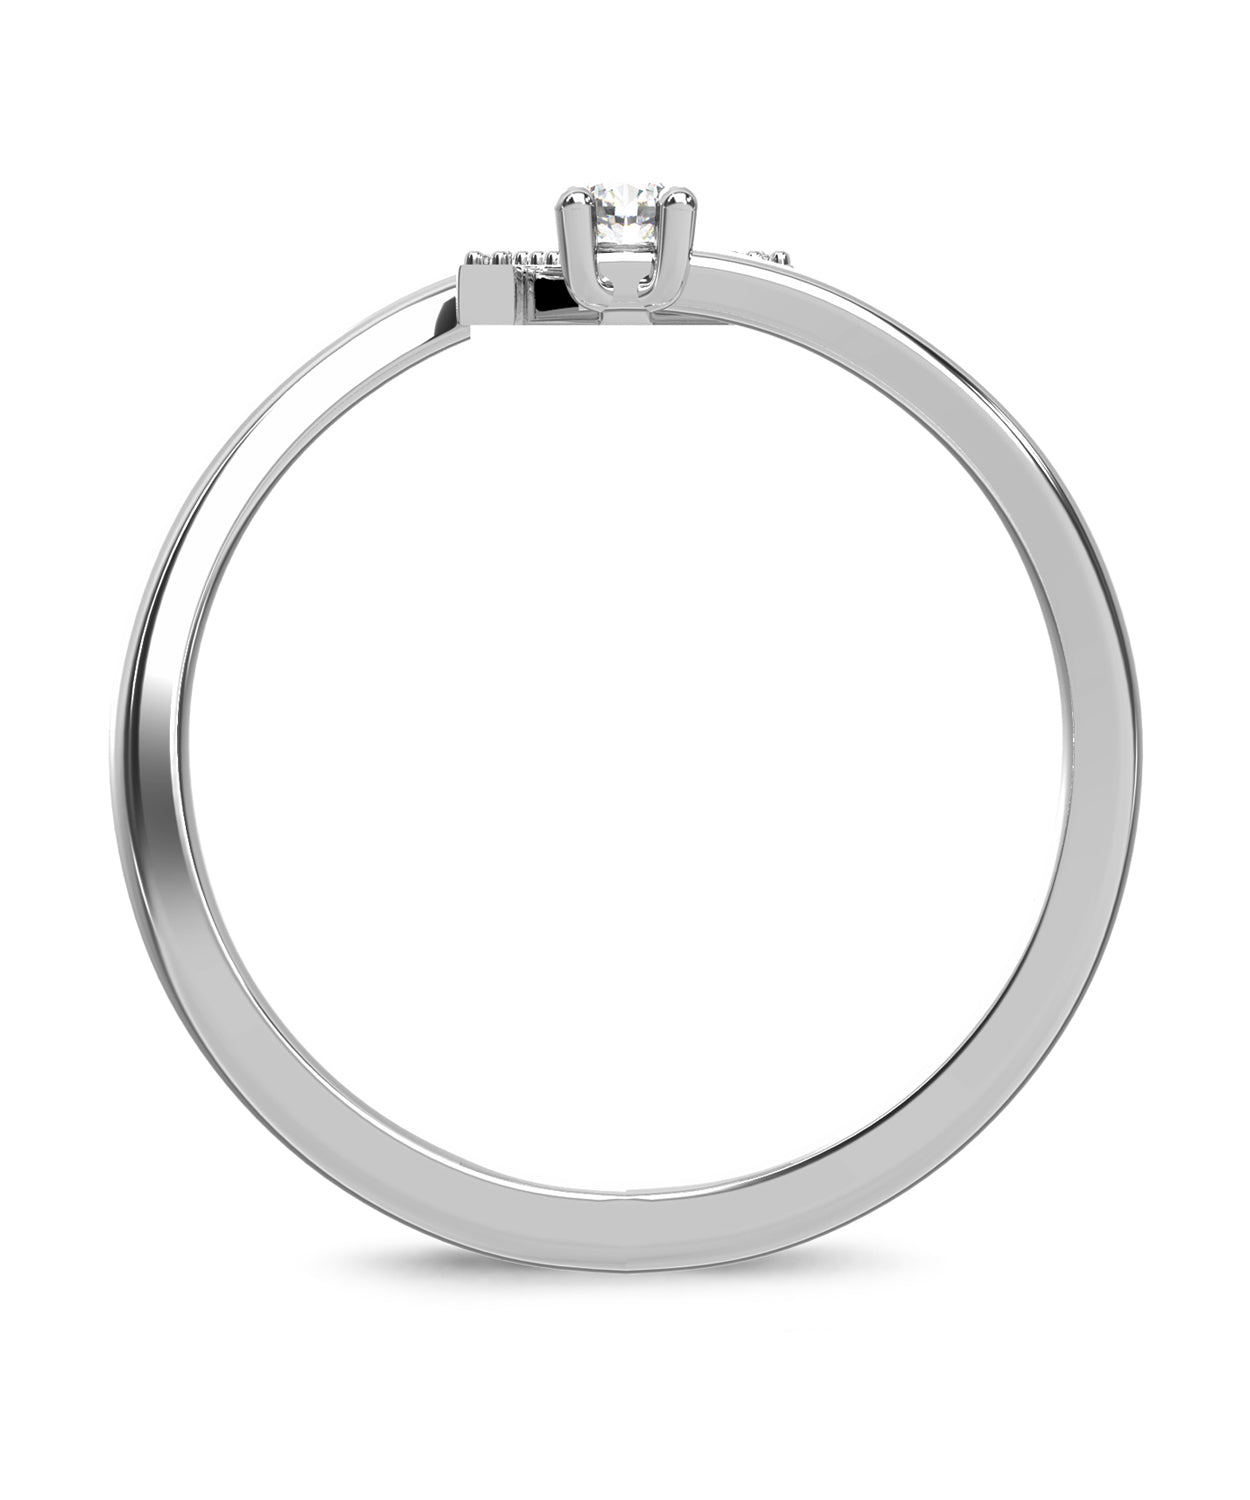 ESEMCO Diamond 18k White Gold Letter M Initial Open Ring View 2